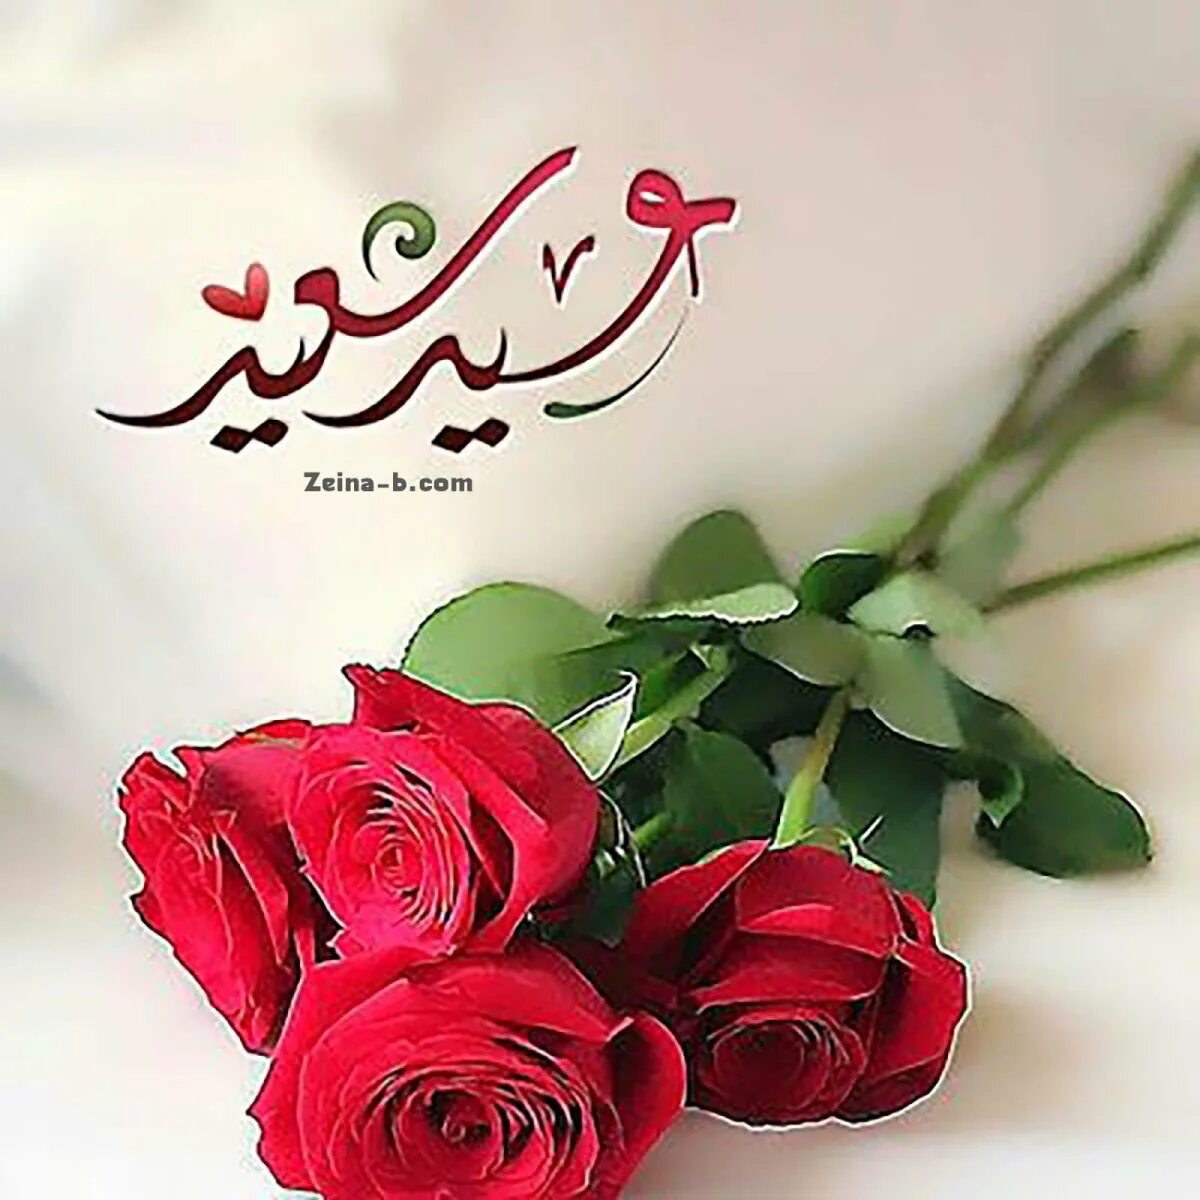 Праздник на арабском языке. Мусульманские пожелания. Красивые мусульманские пожелания. Поздравления на арабском языке. Мусульманские цветы.